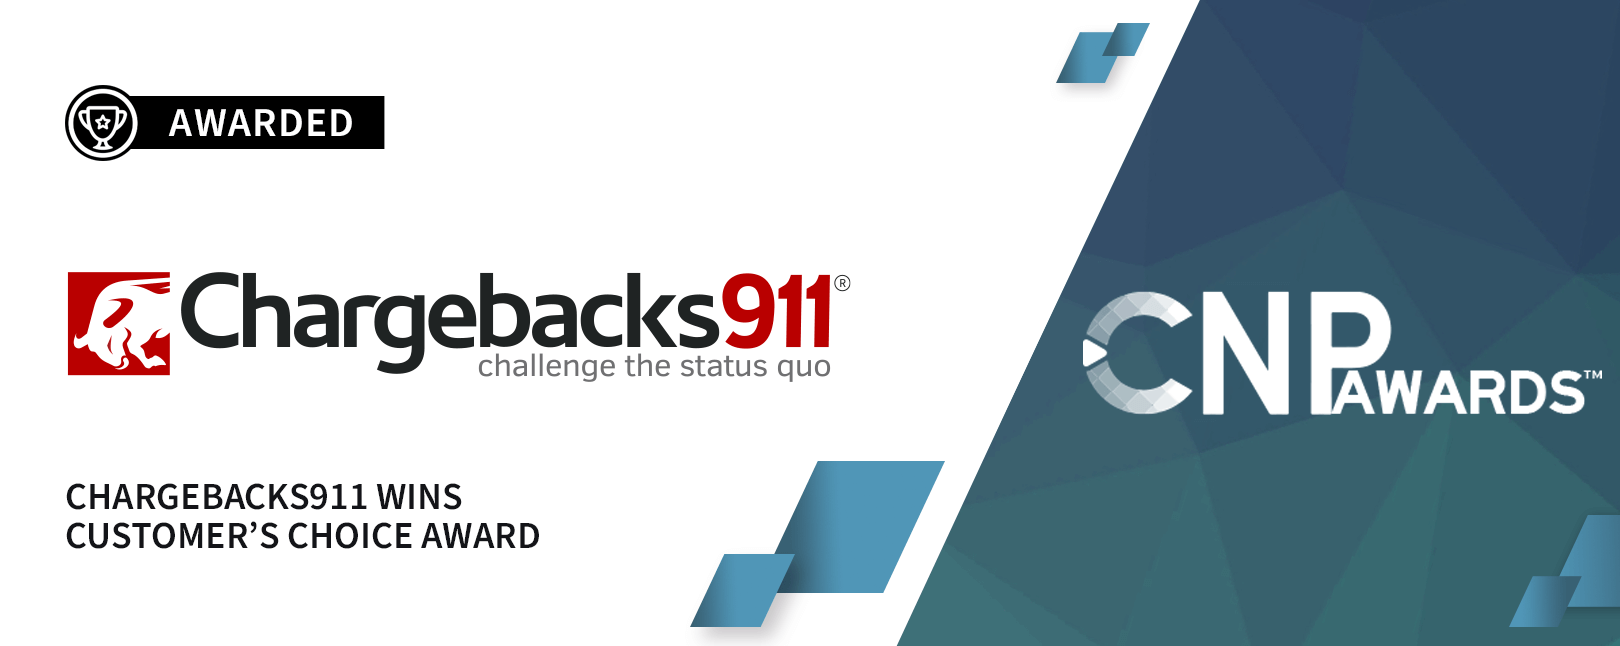 Chargebacks911® Selected for “Best Chargeback Management Program”!